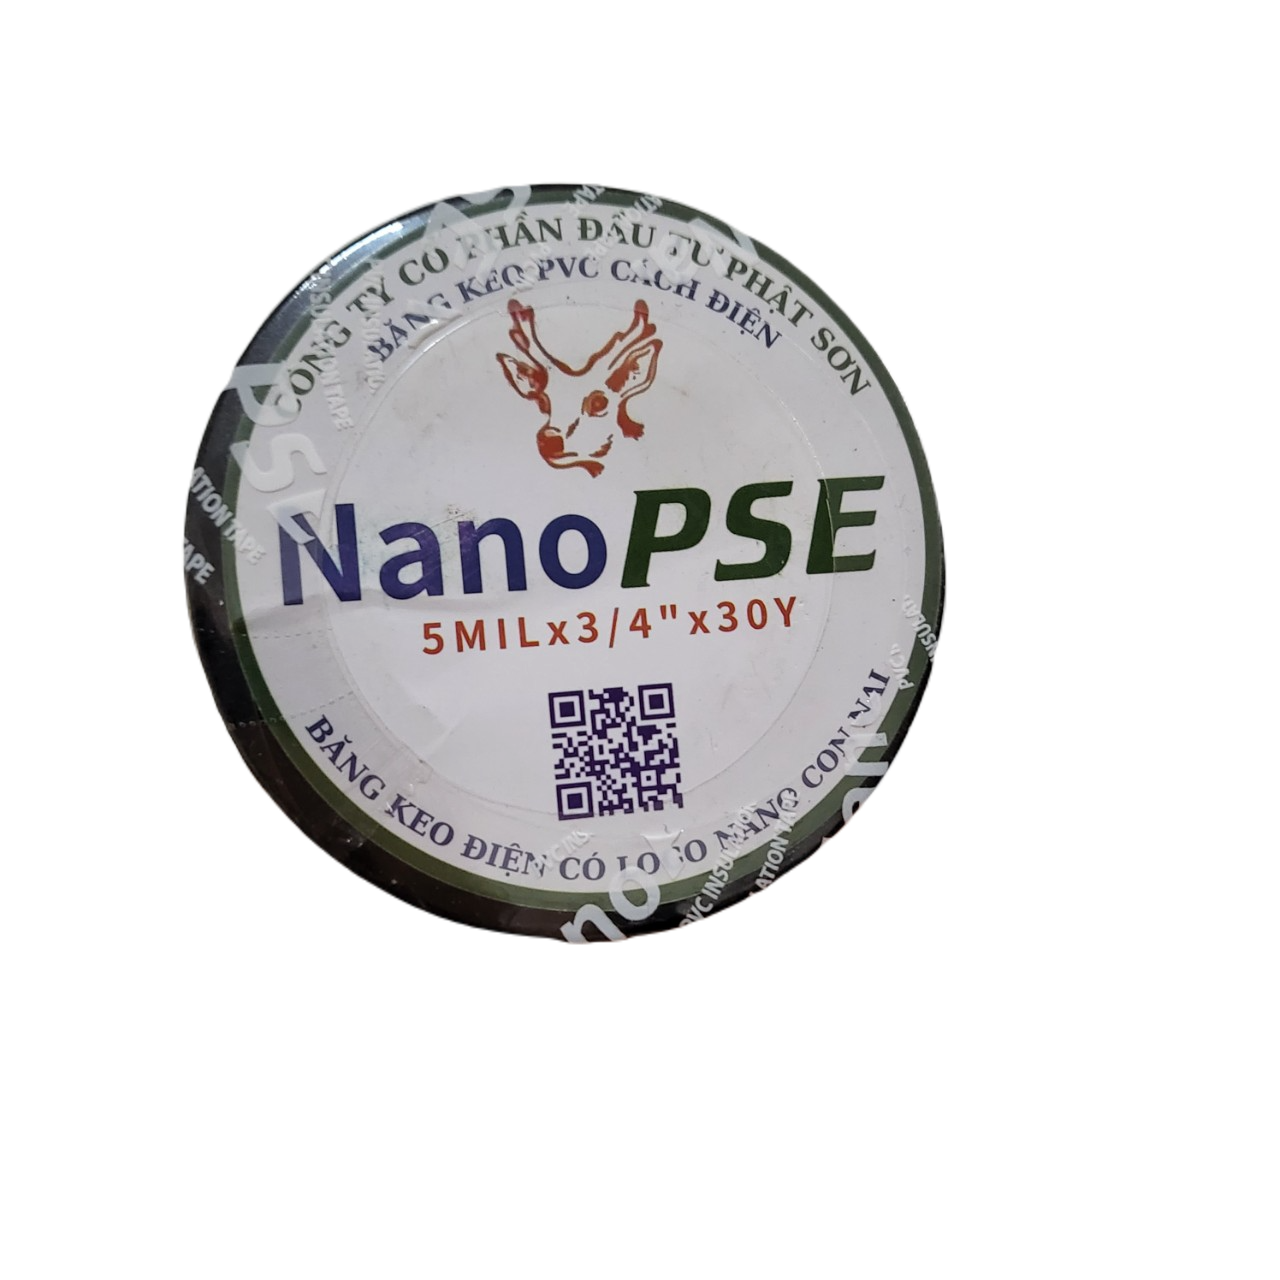 Combo 10 cuộn băng keo đen cách điện Nano PSE, băng dính điện an toàn, chất lượng